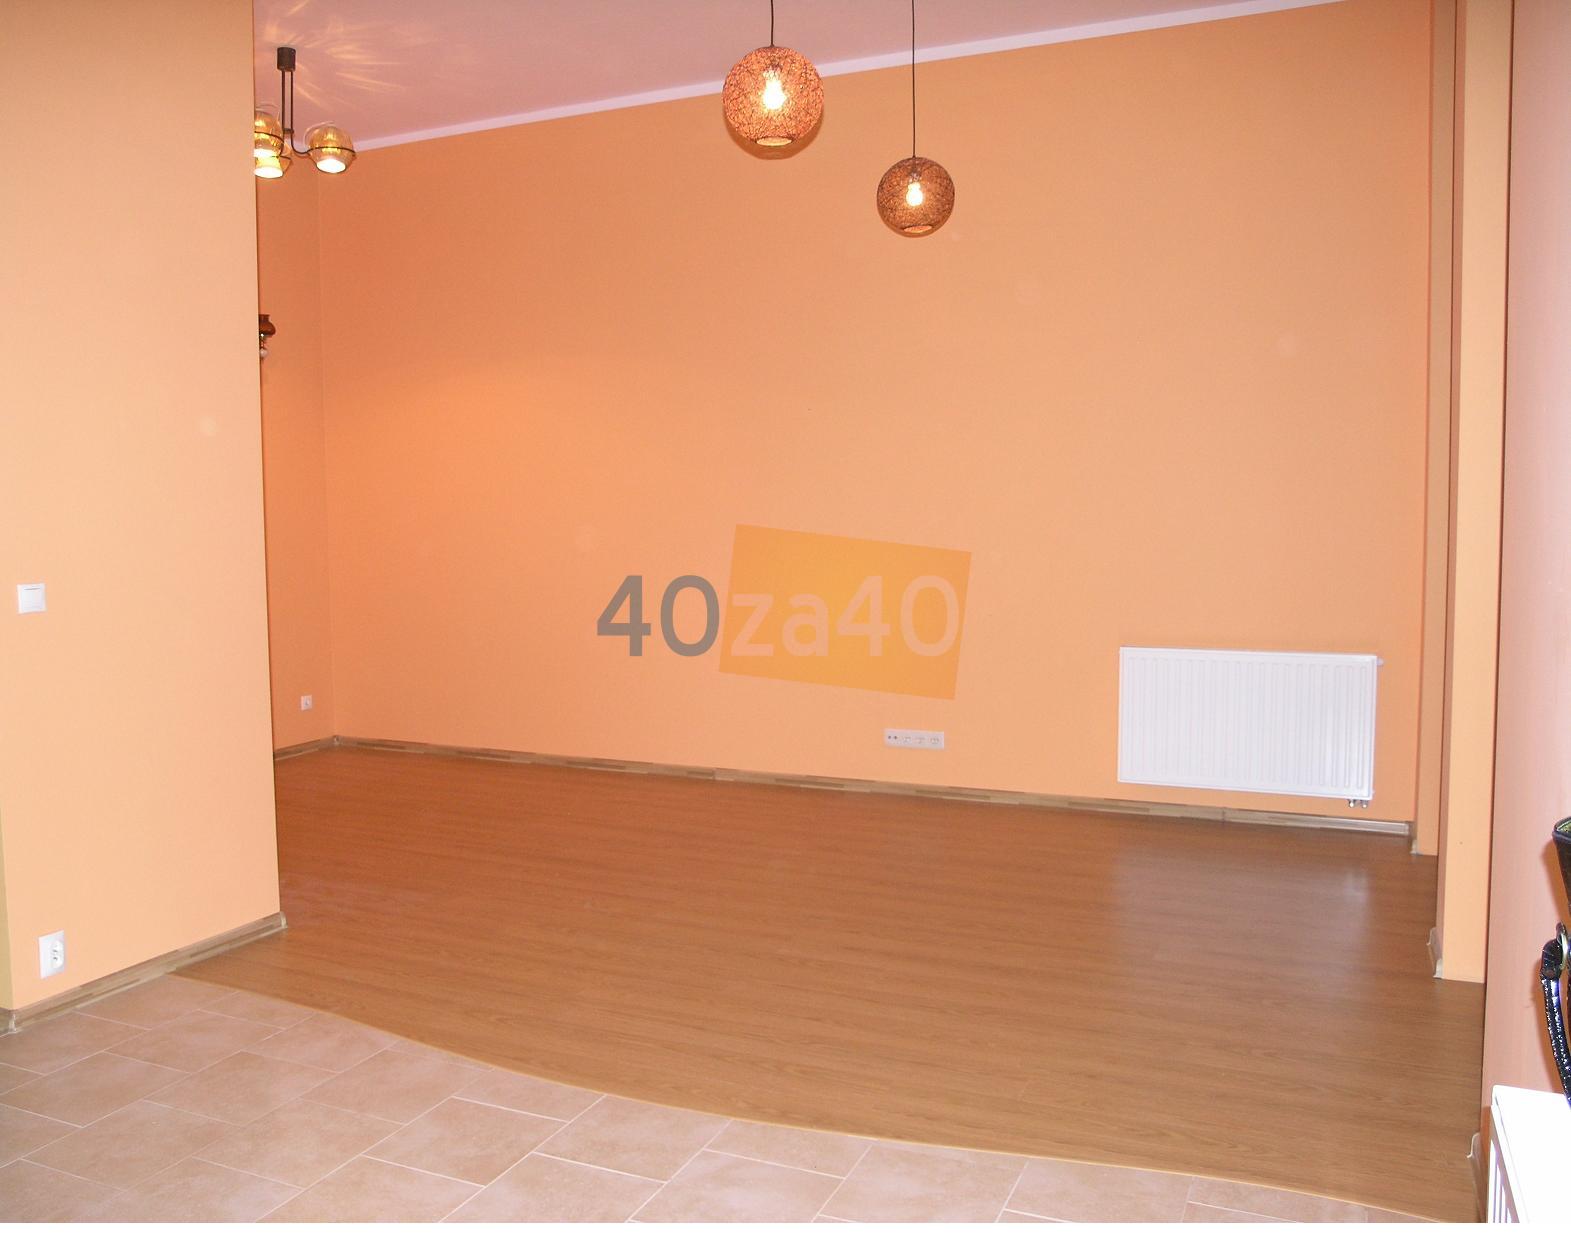 Mieszkanie do wynajęcia, pokoje: 1, cena: 900,00 PLN, Bielsko-Biała, kontakt: PL +48 604 210 955